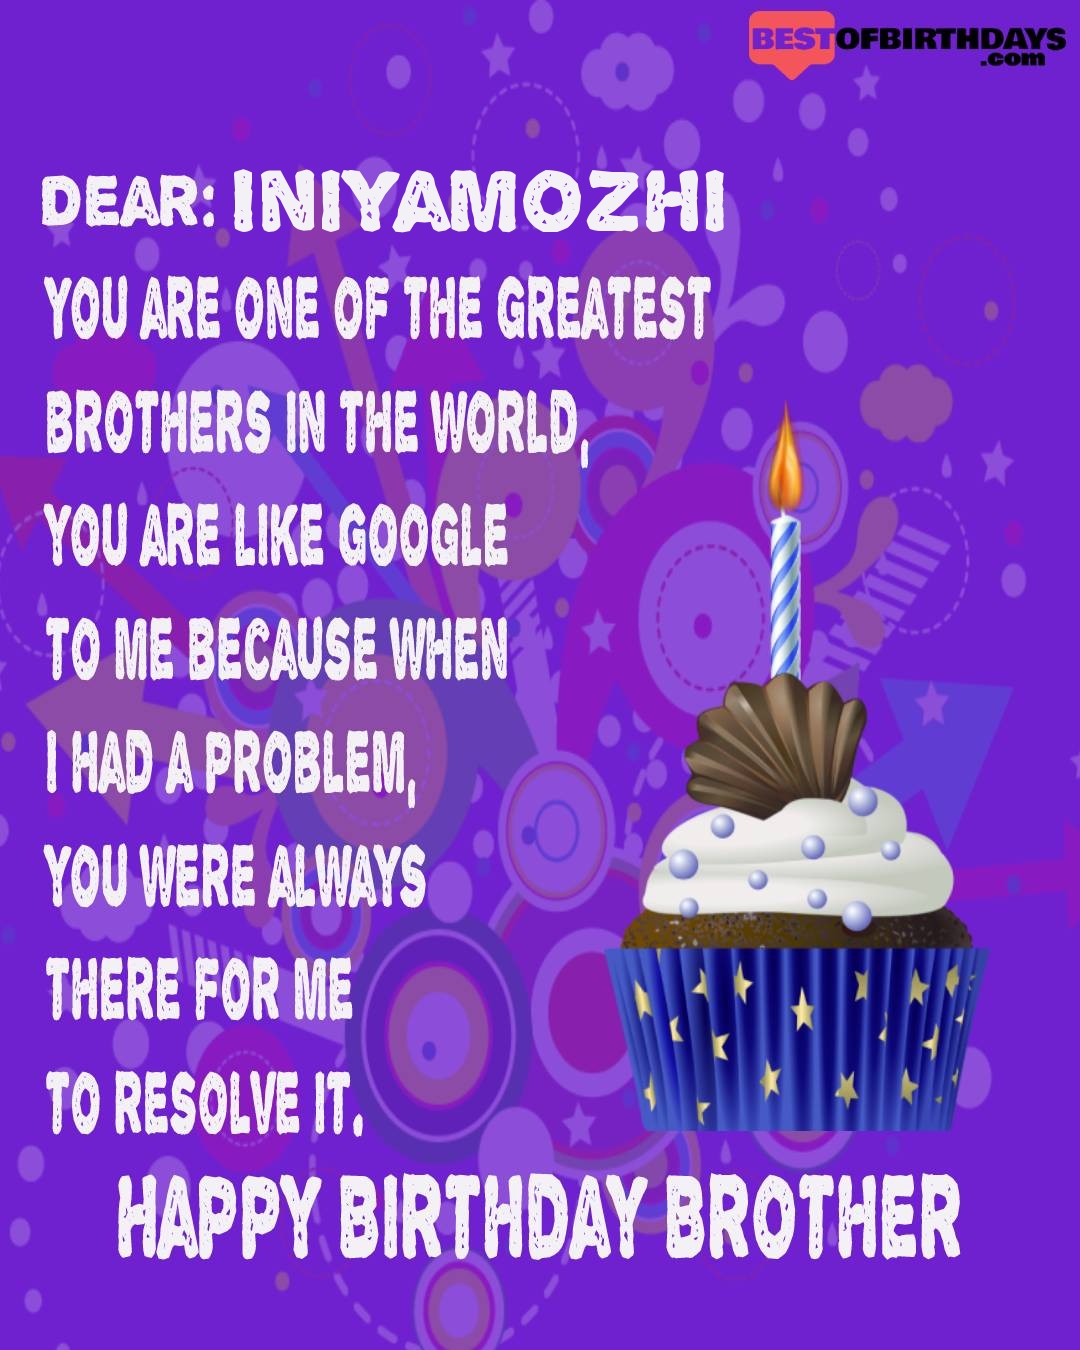 Happy birthday iniyamozhi bhai brother bro